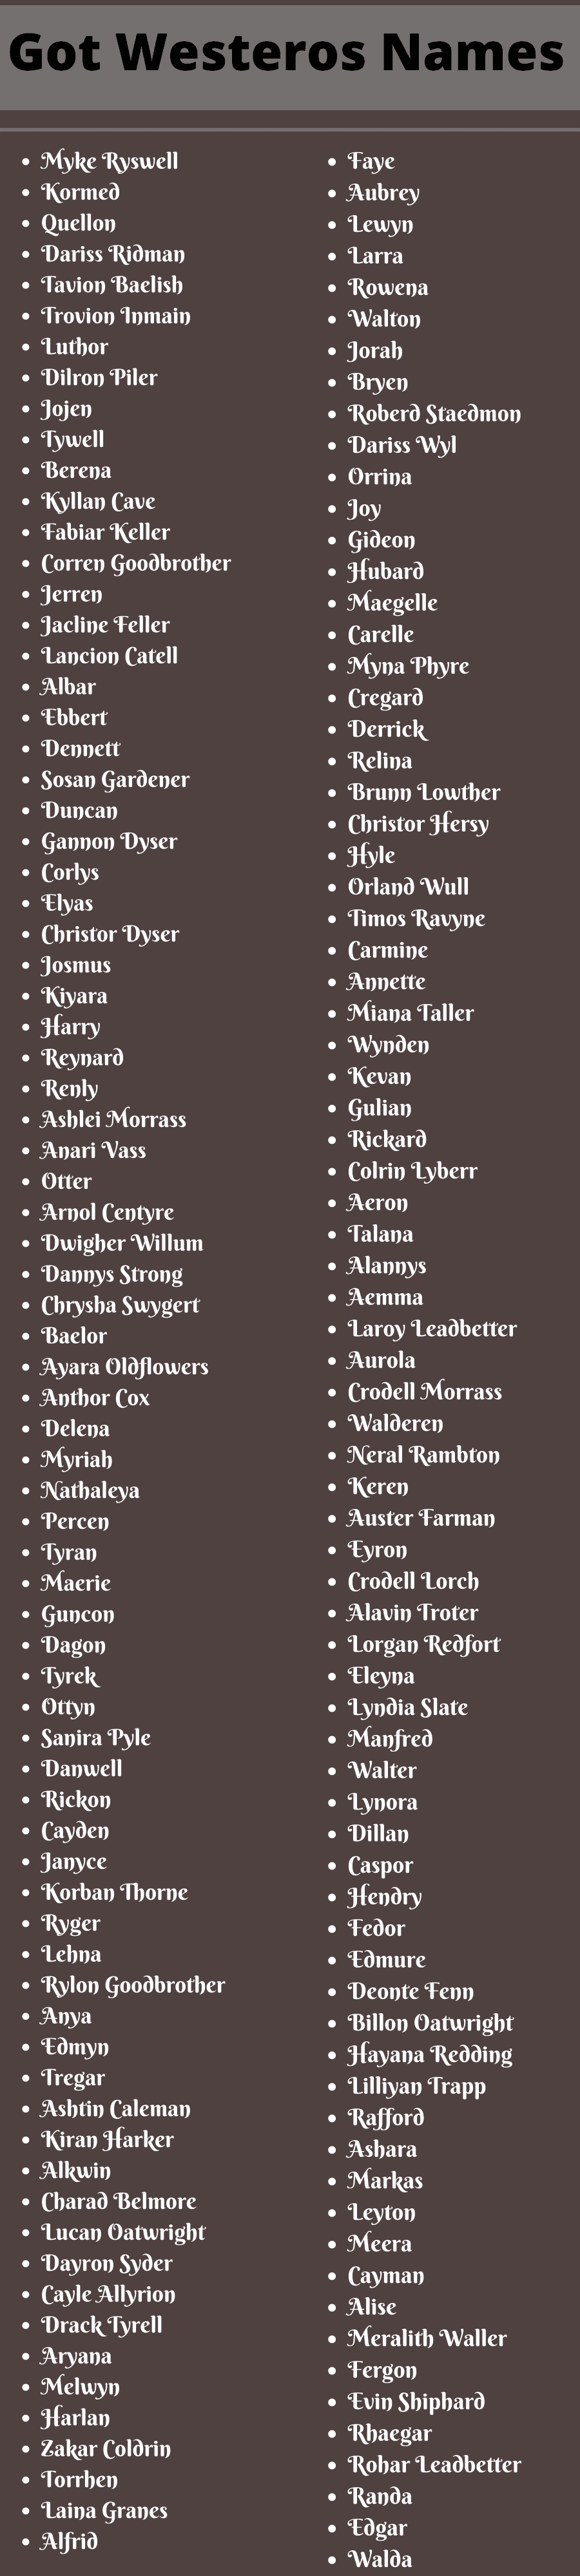 Got Westeros Names 